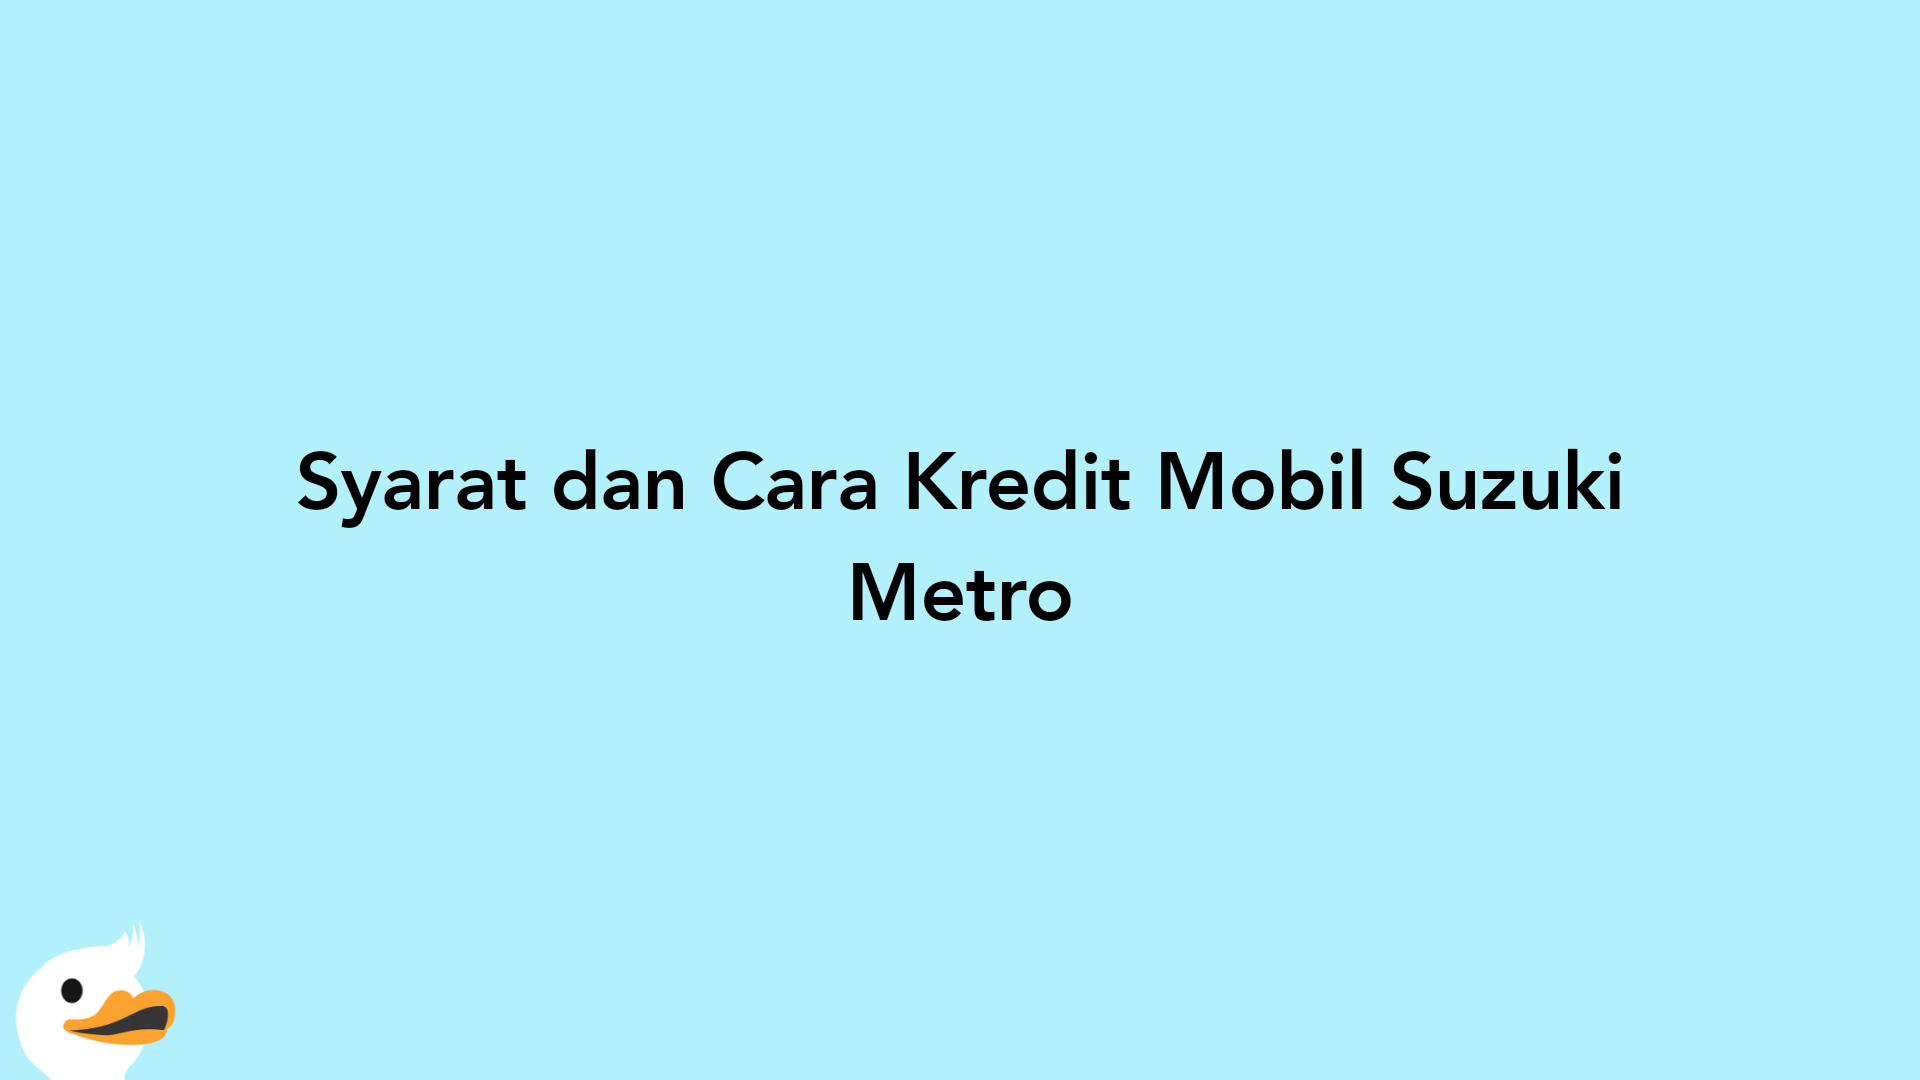 Syarat dan Cara Kredit Mobil Suzuki Metro